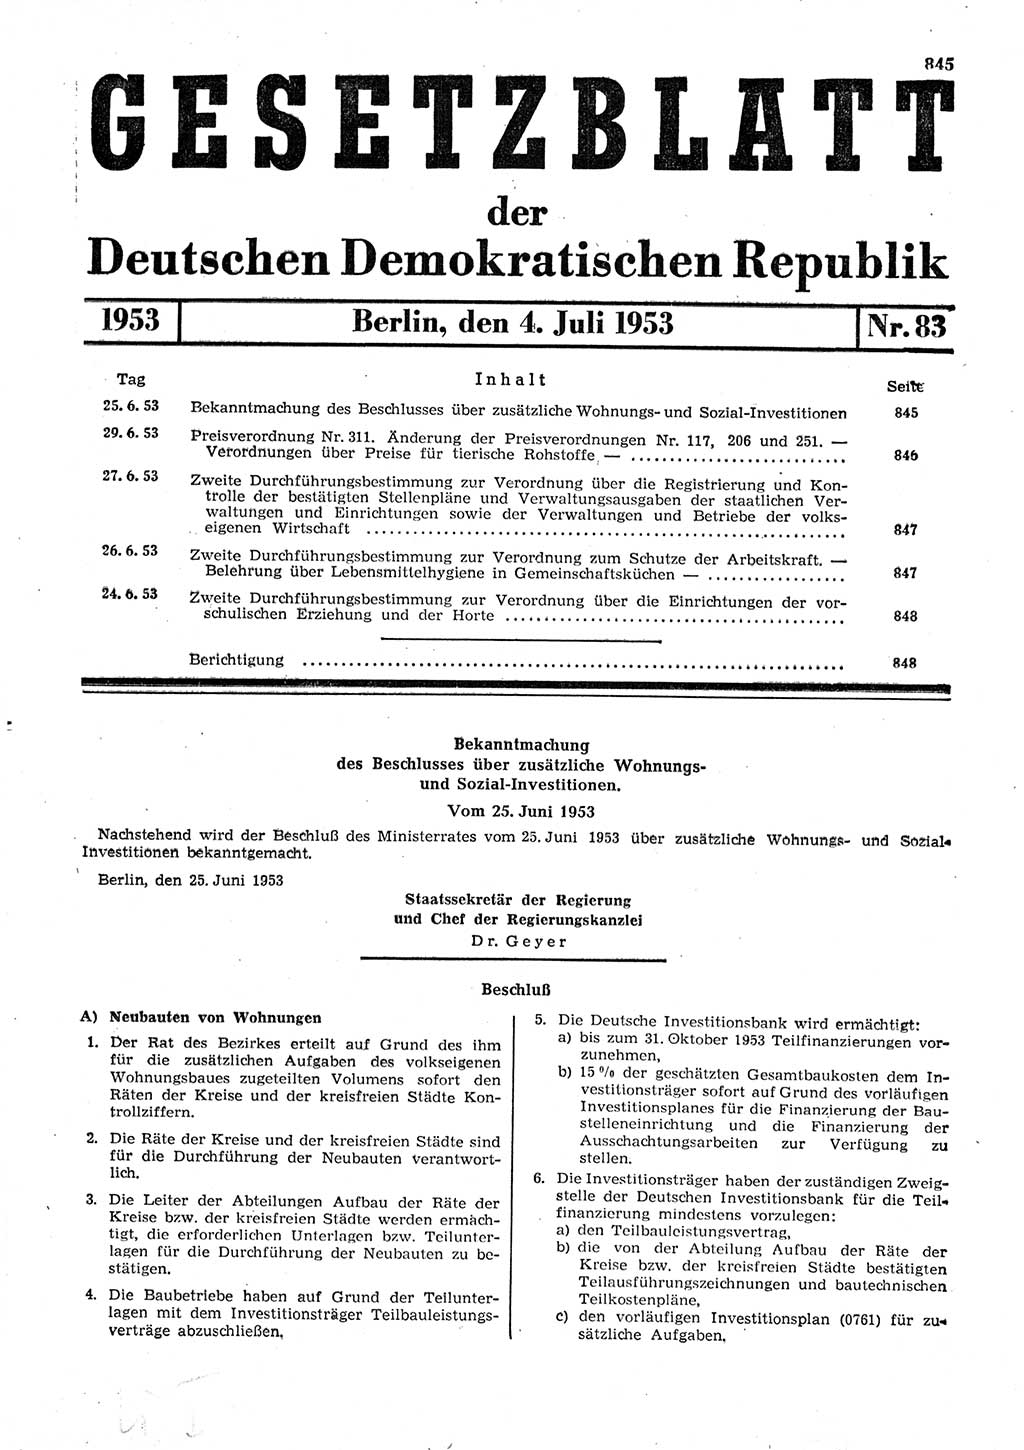 Gesetzblatt (GBl.) der Deutschen Demokratischen Republik (DDR) 1953, Seite 845 (GBl. DDR 1953, S. 845)